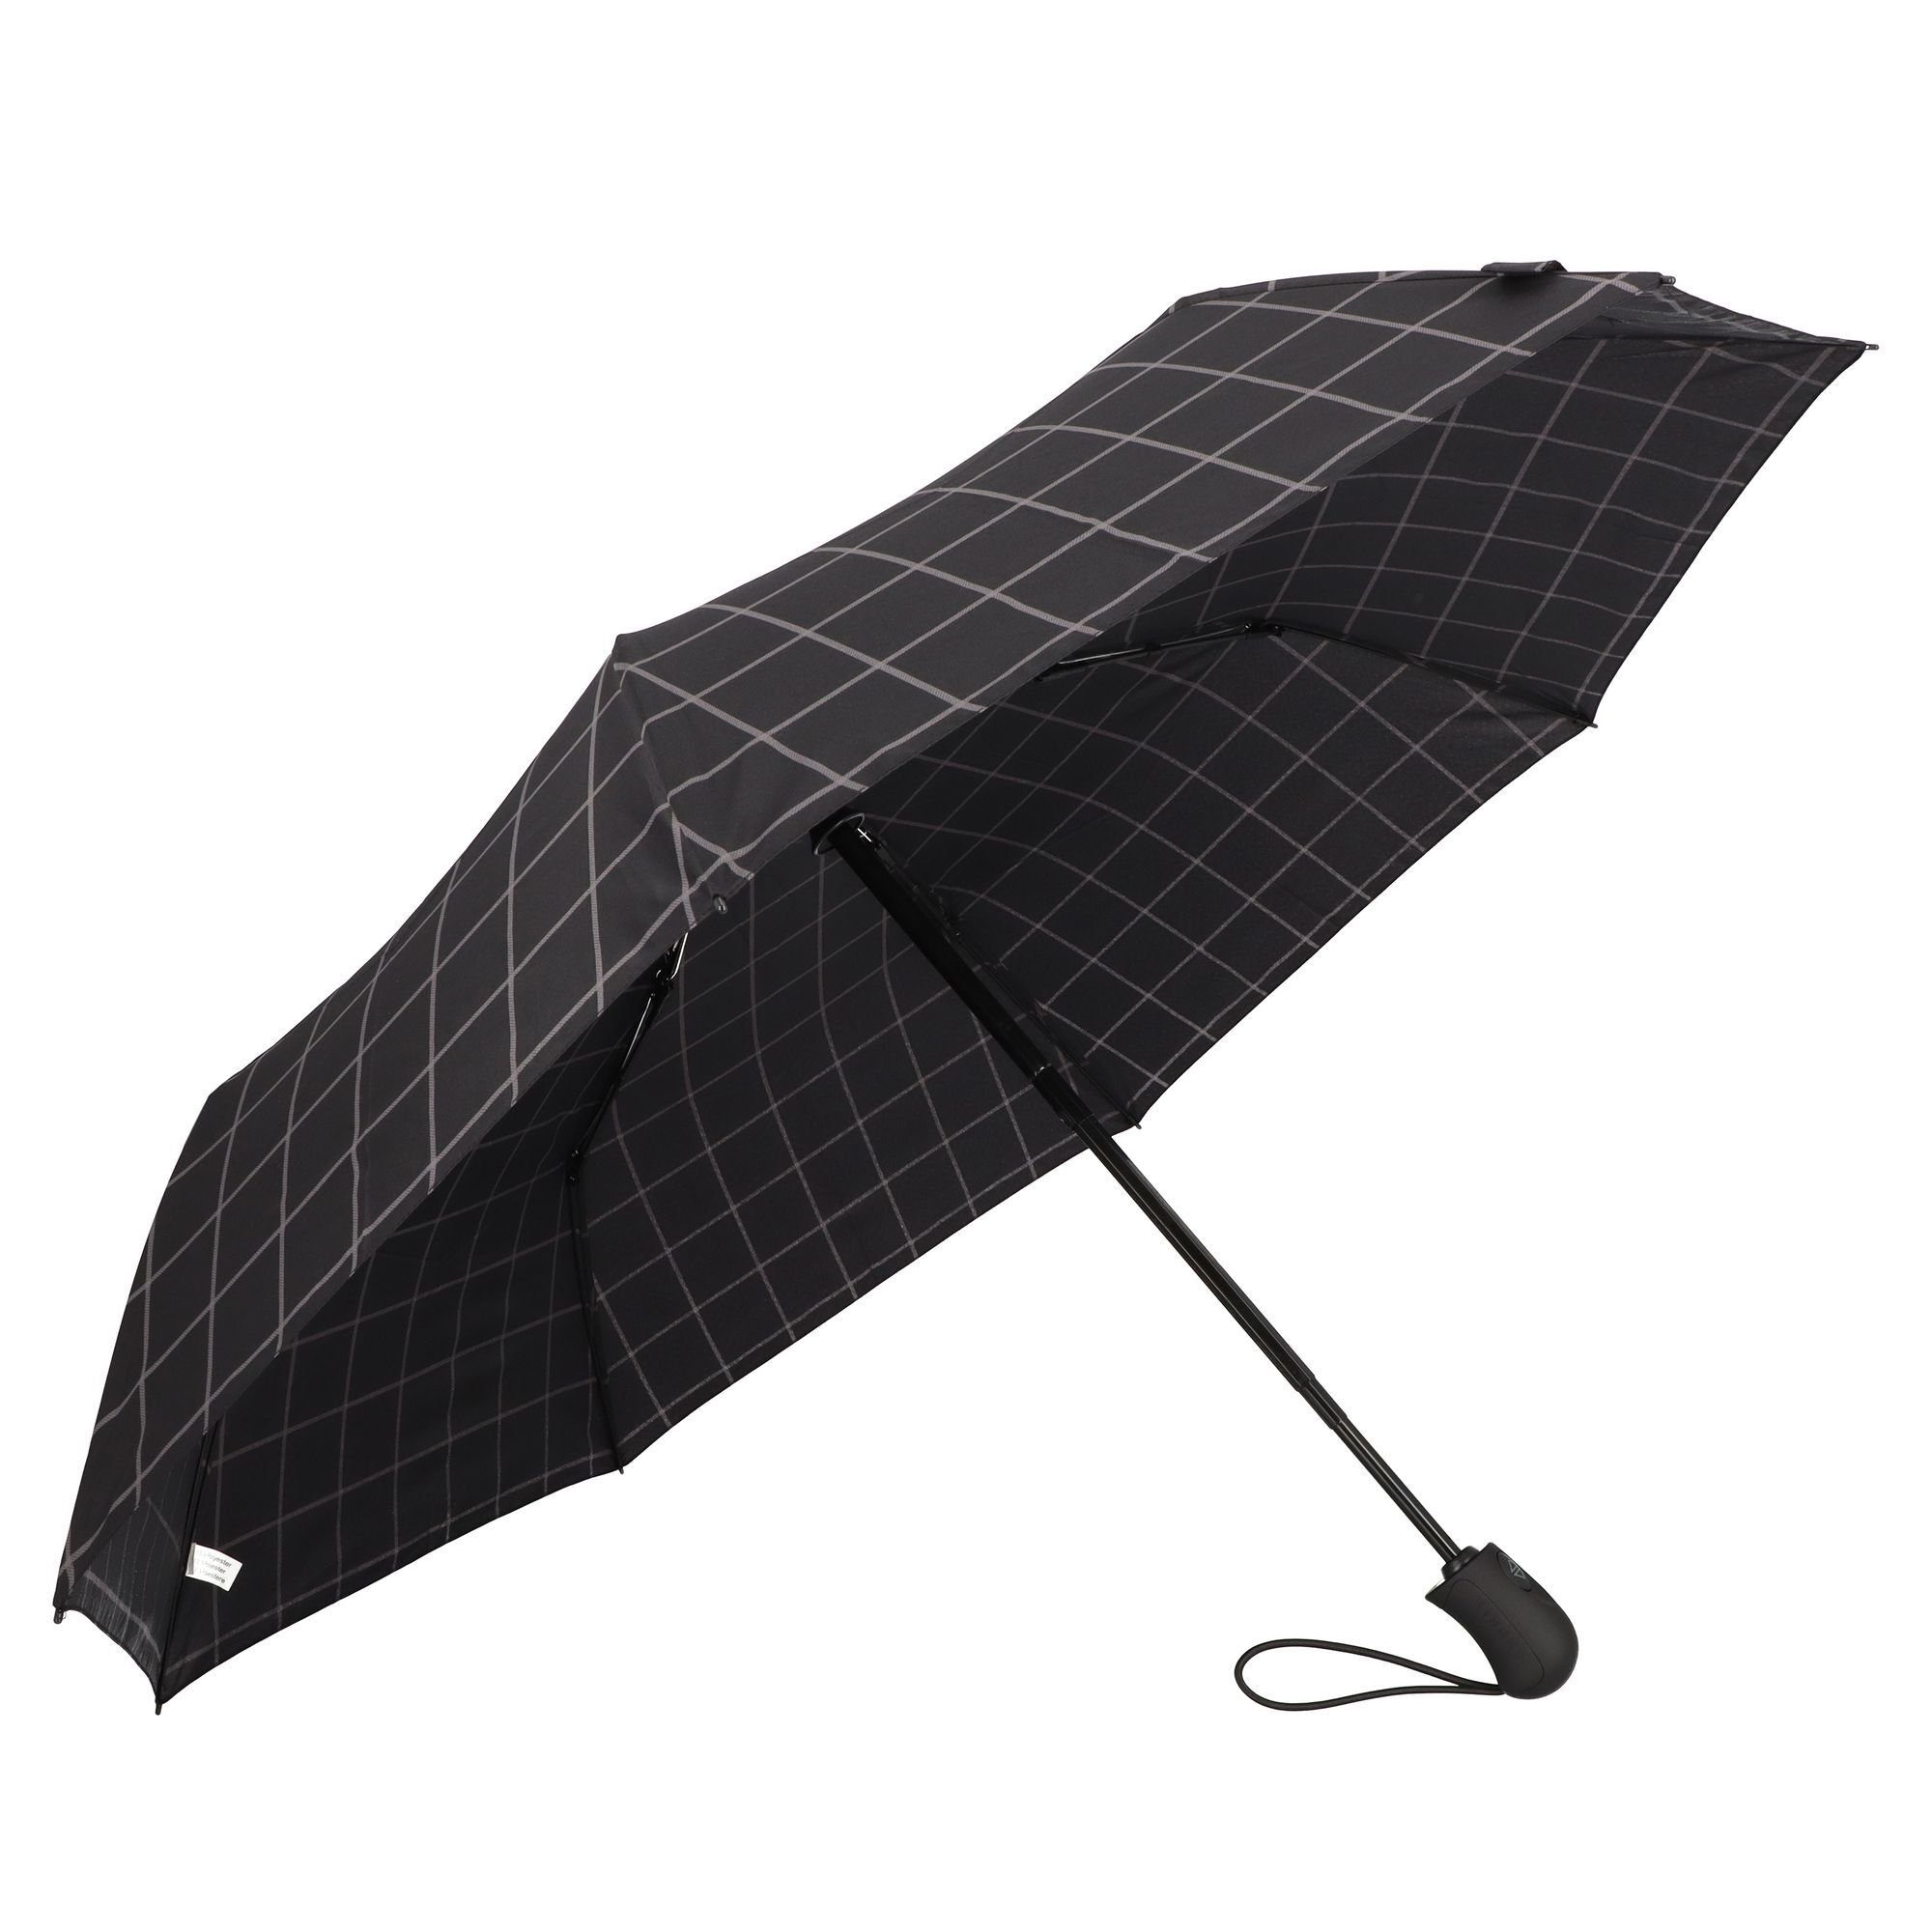 Taschenregenschirm check Gents Esprit black Easymatic